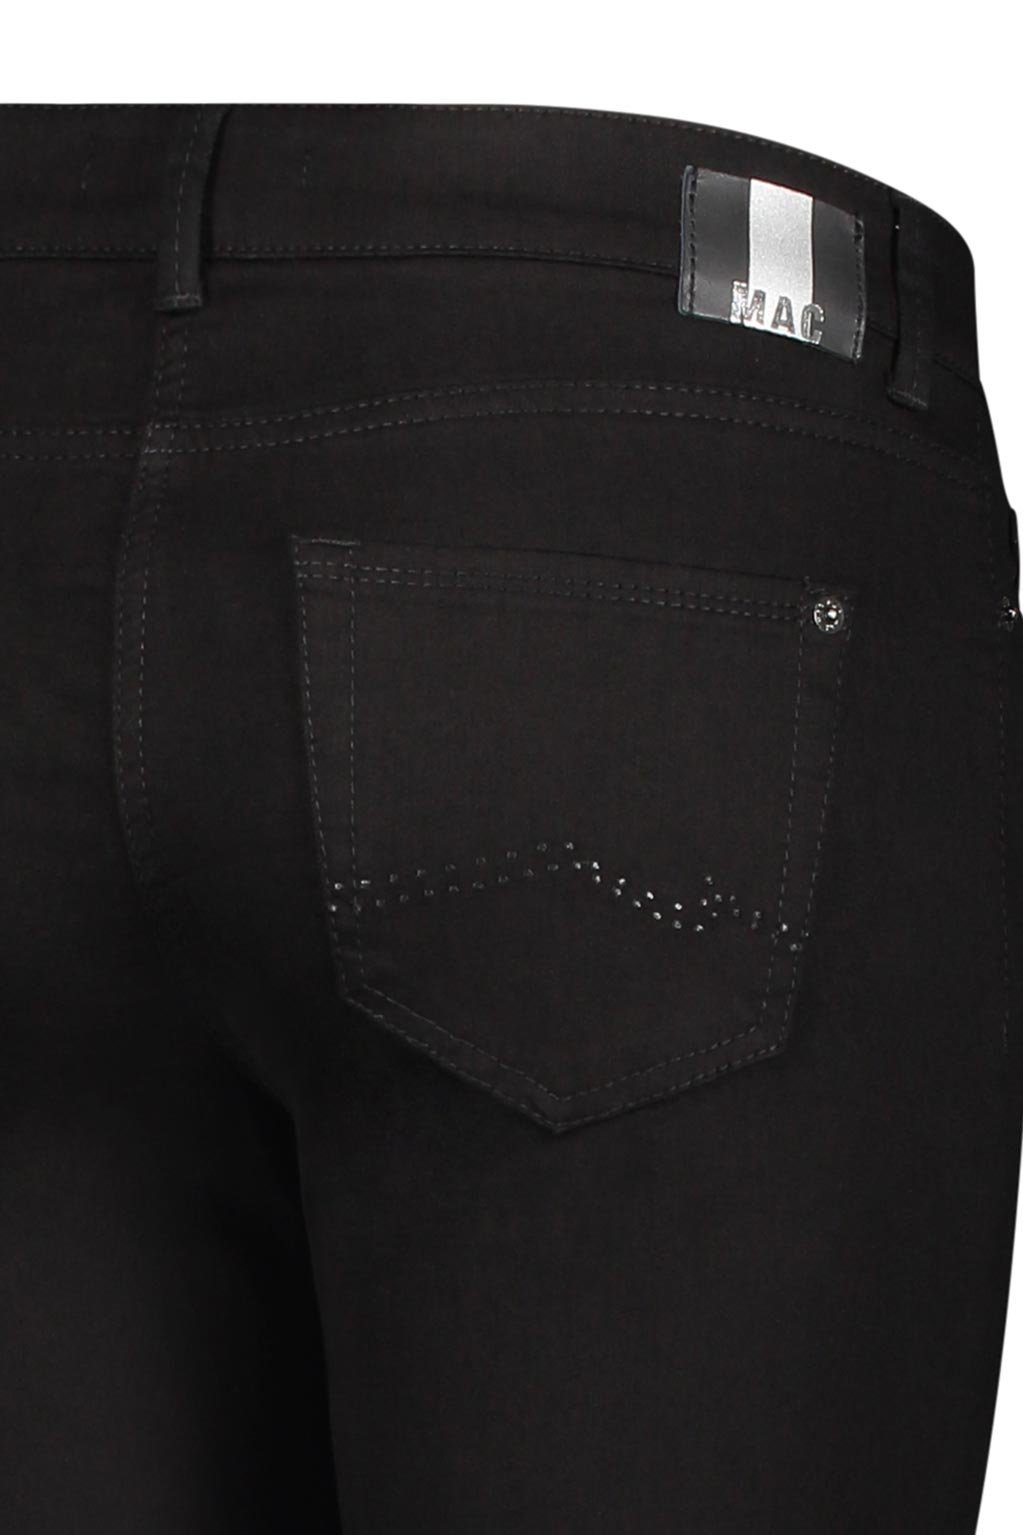 PIPE CARRIE Stretch-Jeans MAC black 5954-80-0380L-D999 black MAC